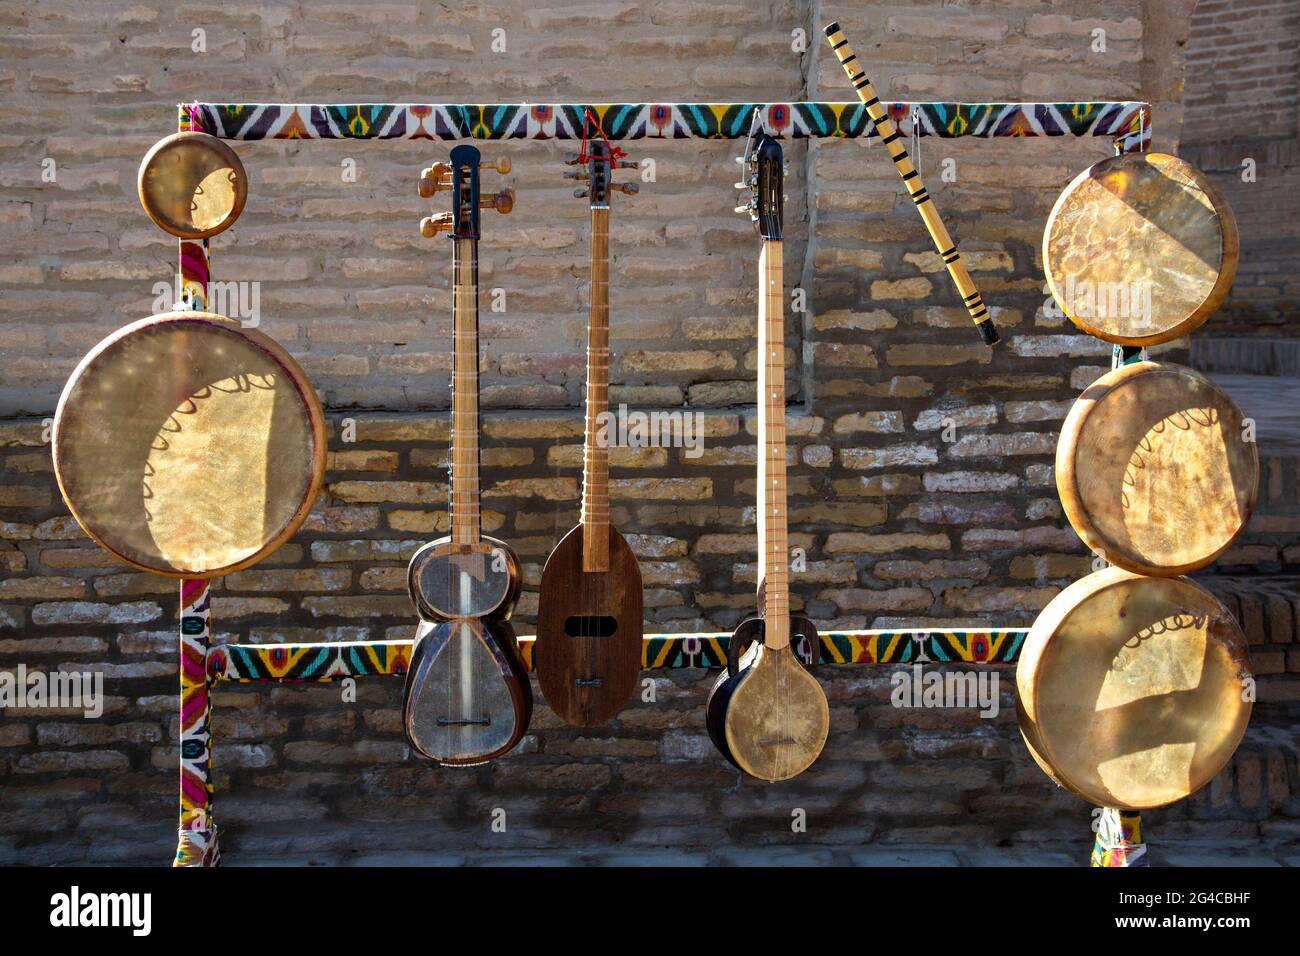 Instruments de musique locaux à Khiva, Ouzbékistan Banque D'Images